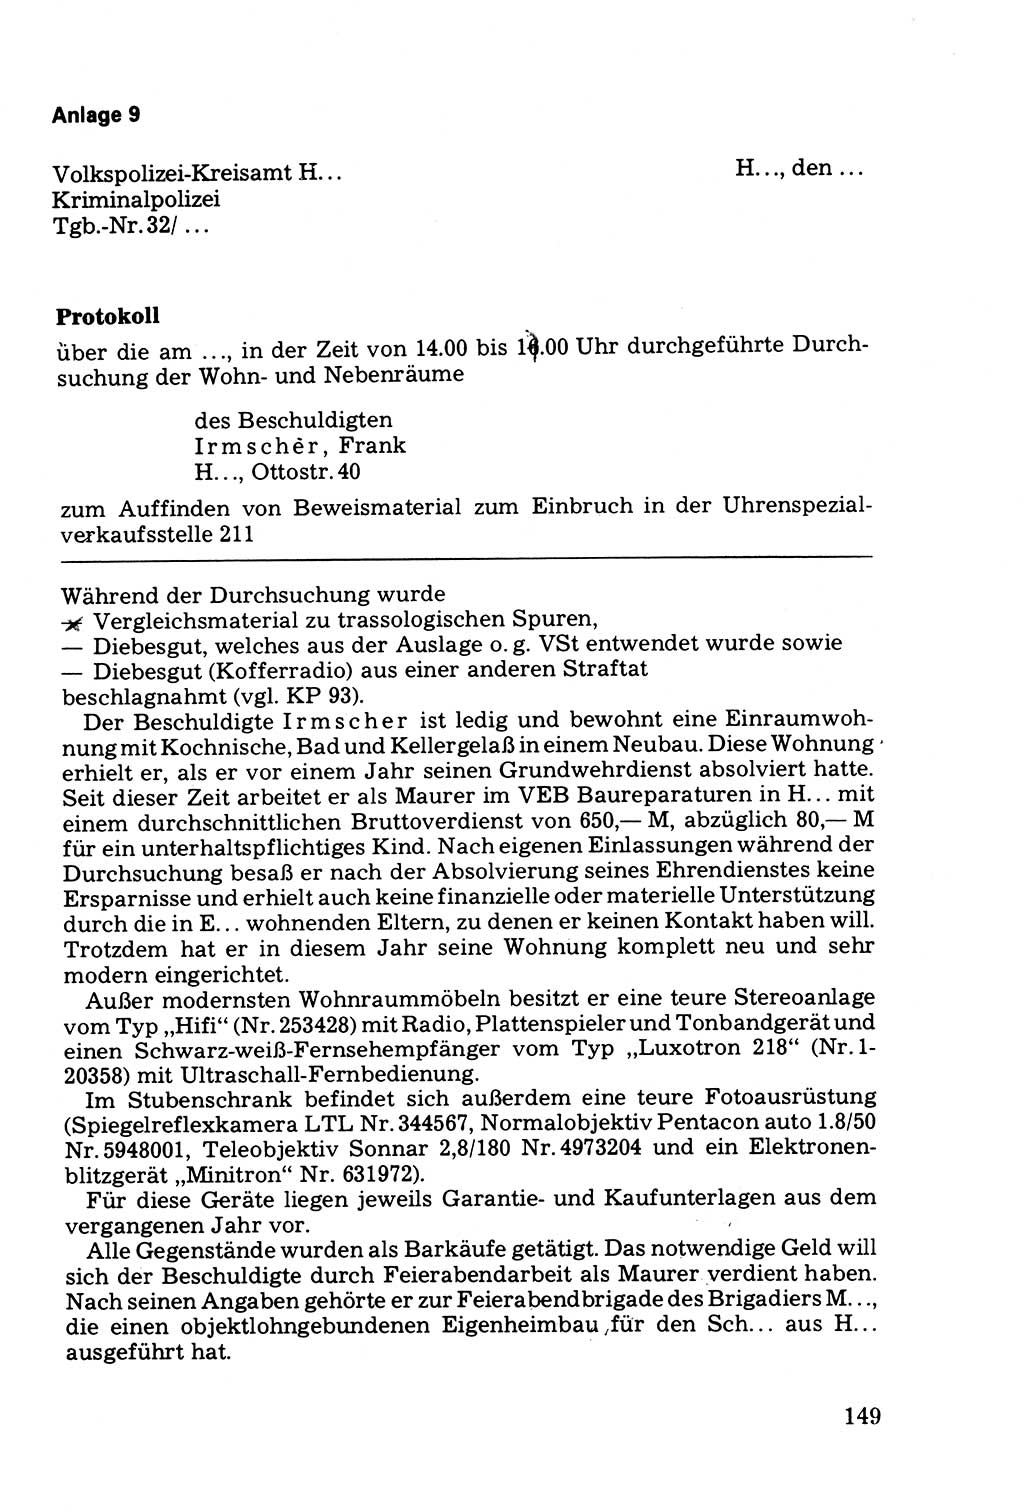 Die Durchsuchung und die Beschlagnahme [Deutsche Demokratische Republik (DDR)] 1979, Seite 149 (Durchs. Beschl. DDR 1979, S. 149)